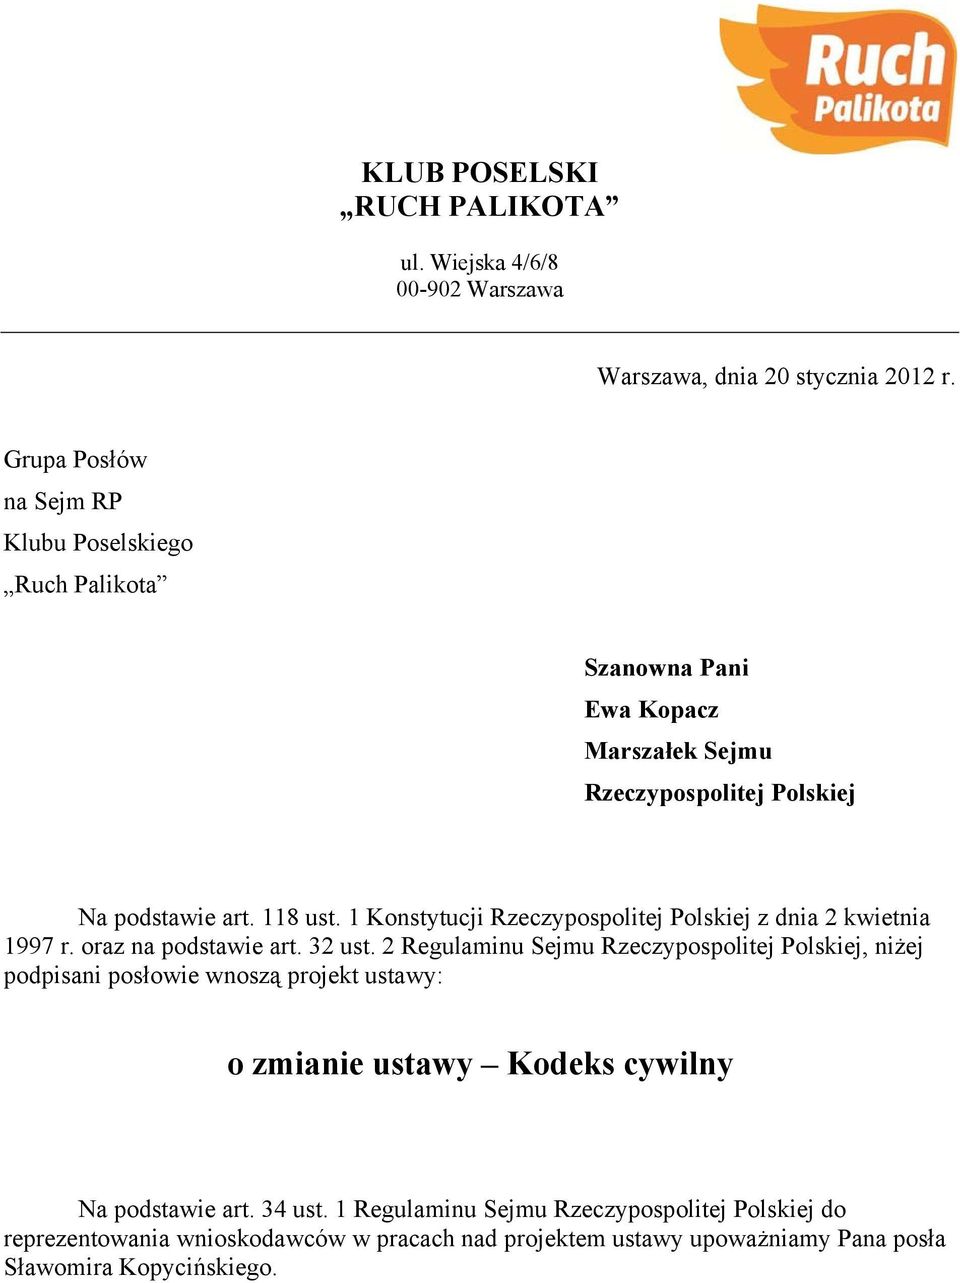 1 Konstytucji Rzeczypospolitej Polskiej z dnia 2 kwietnia 1997 r. oraz na podstawie art. 32 ust.